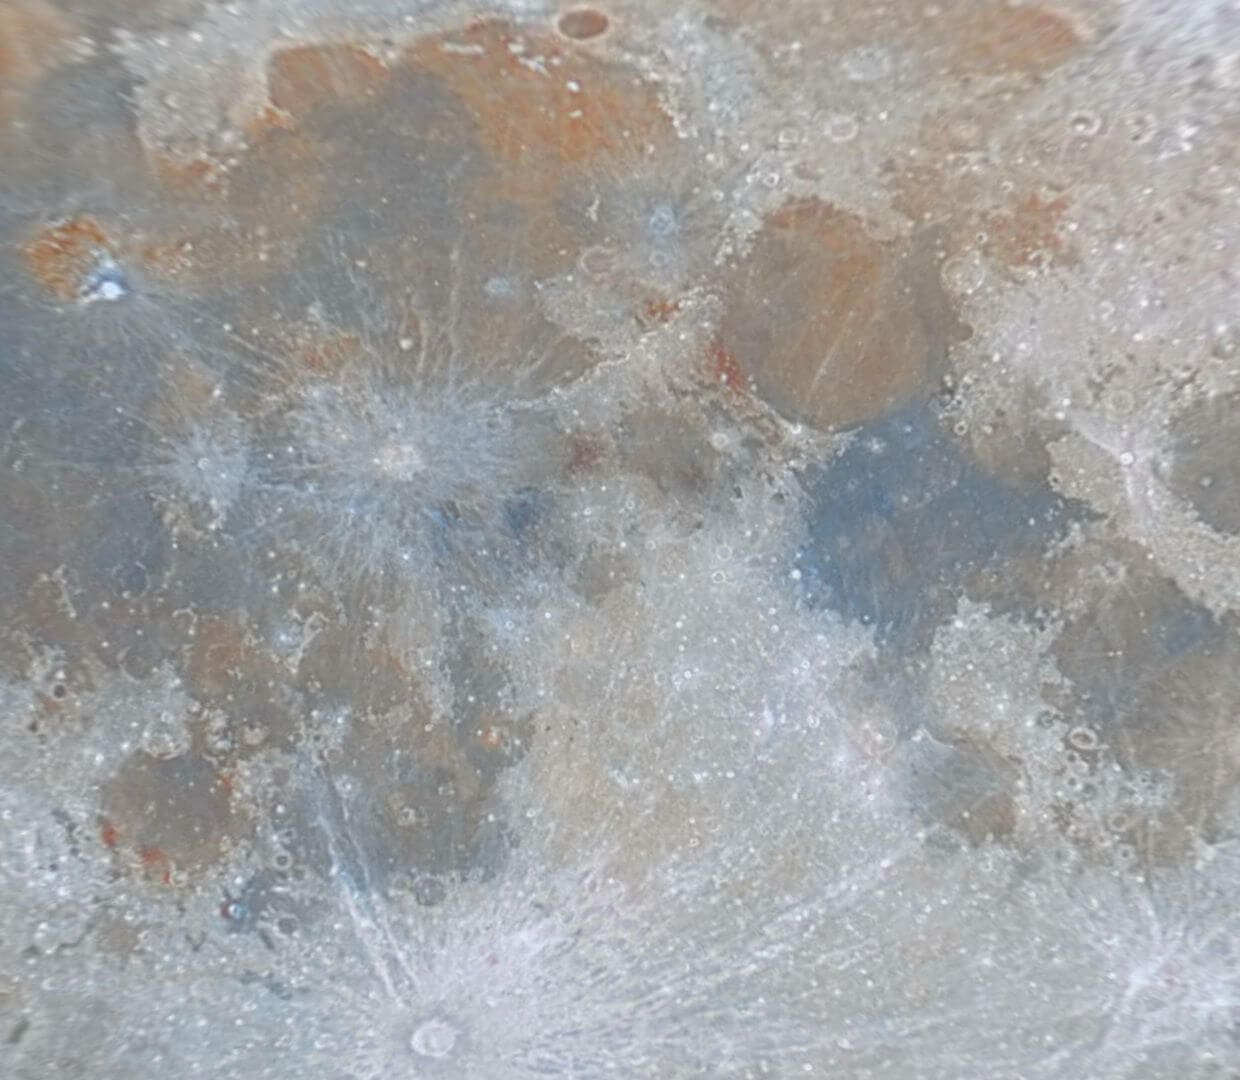 Luna llena en color proyección equirectangular planetocéntrica.